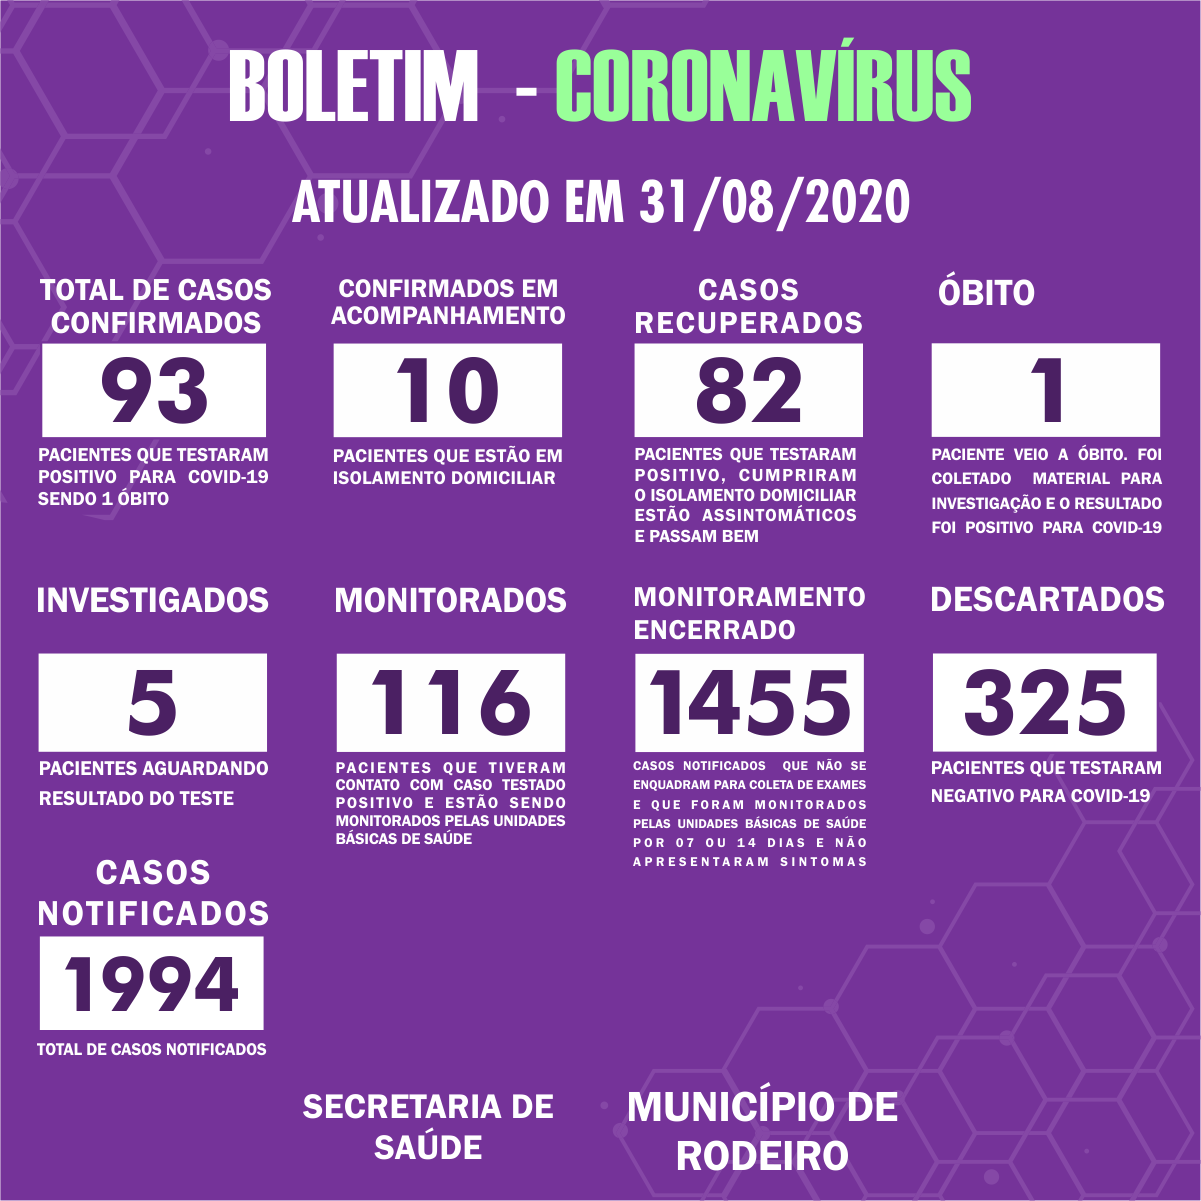 Boletim Epidemiológico do Município de Rodeiro sobre coronavírus, atualizado em 31/08/2020